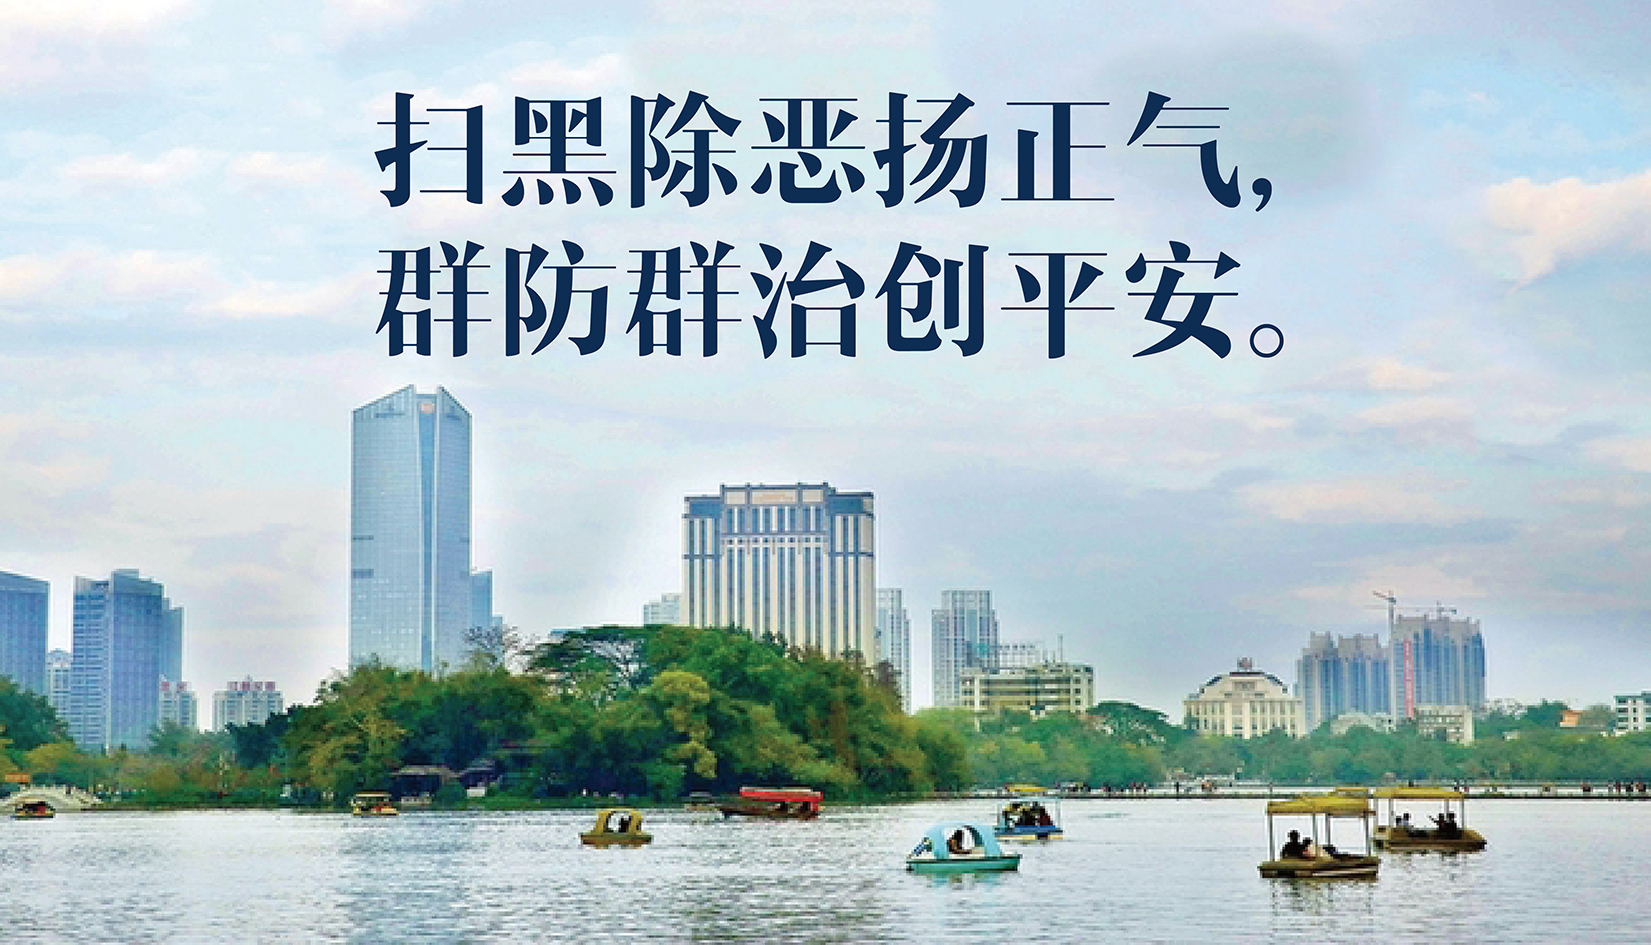 国家税务总局惠州市税务局关于公布“扫黑除恶”举报方式的公告